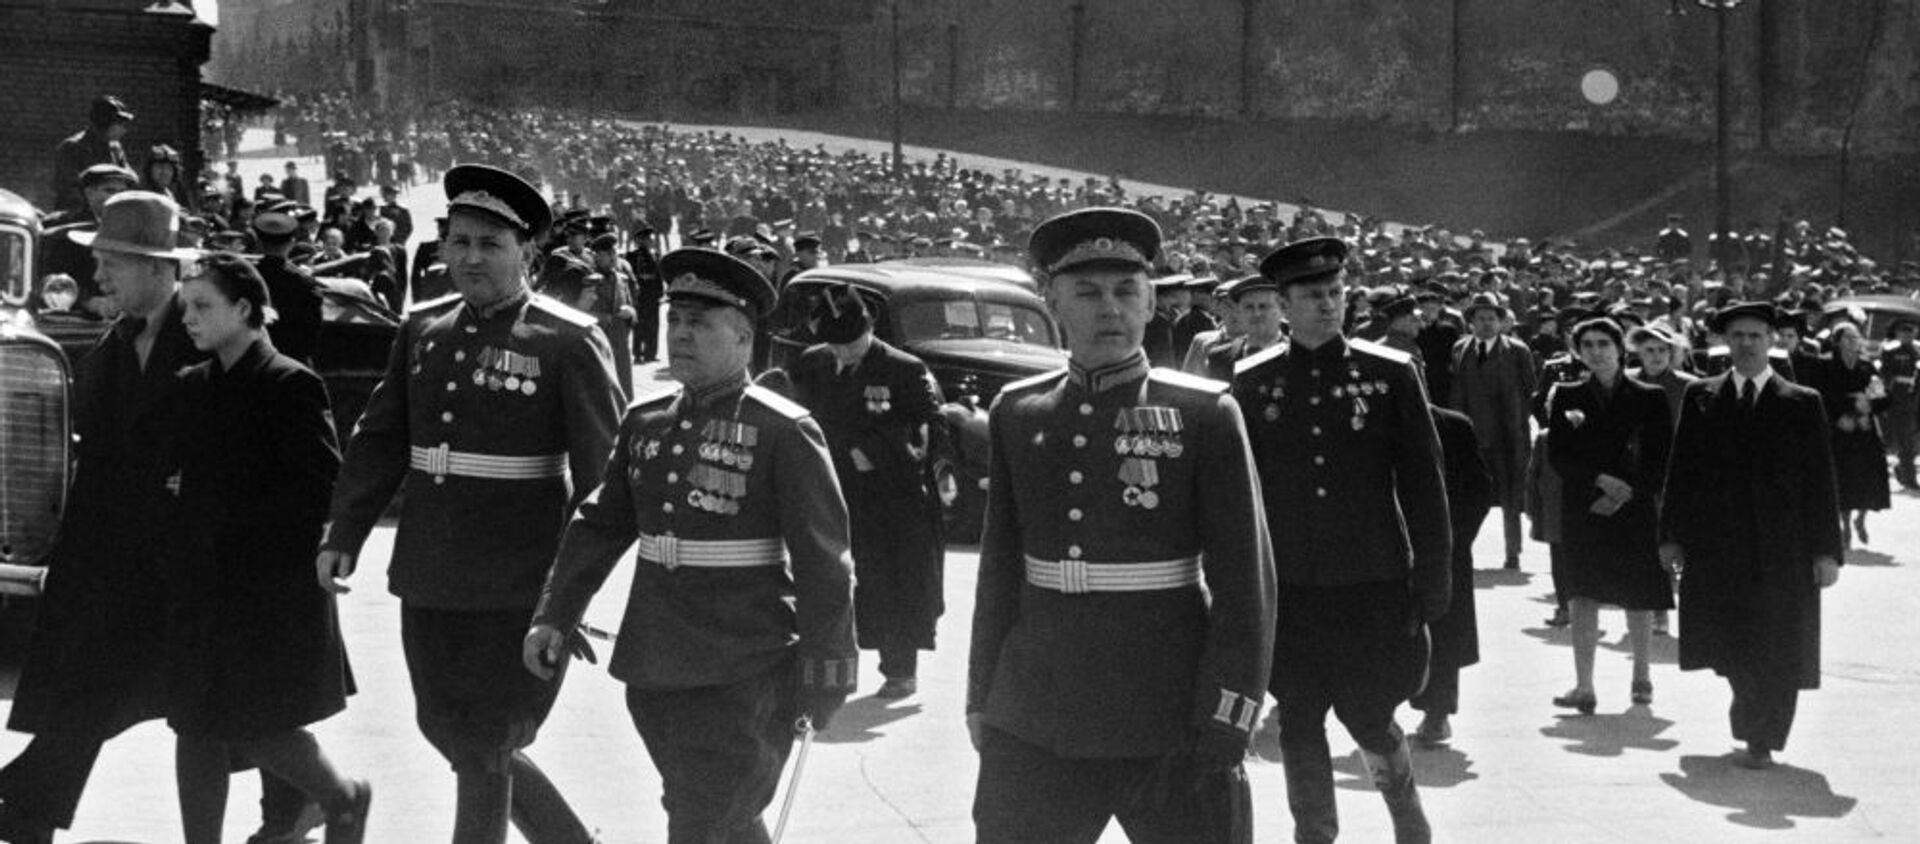 Buổi diễu hành Chiến thắng năm 1945 ở Moskva. - Sputnik Việt Nam, 1920, 24.06.2020